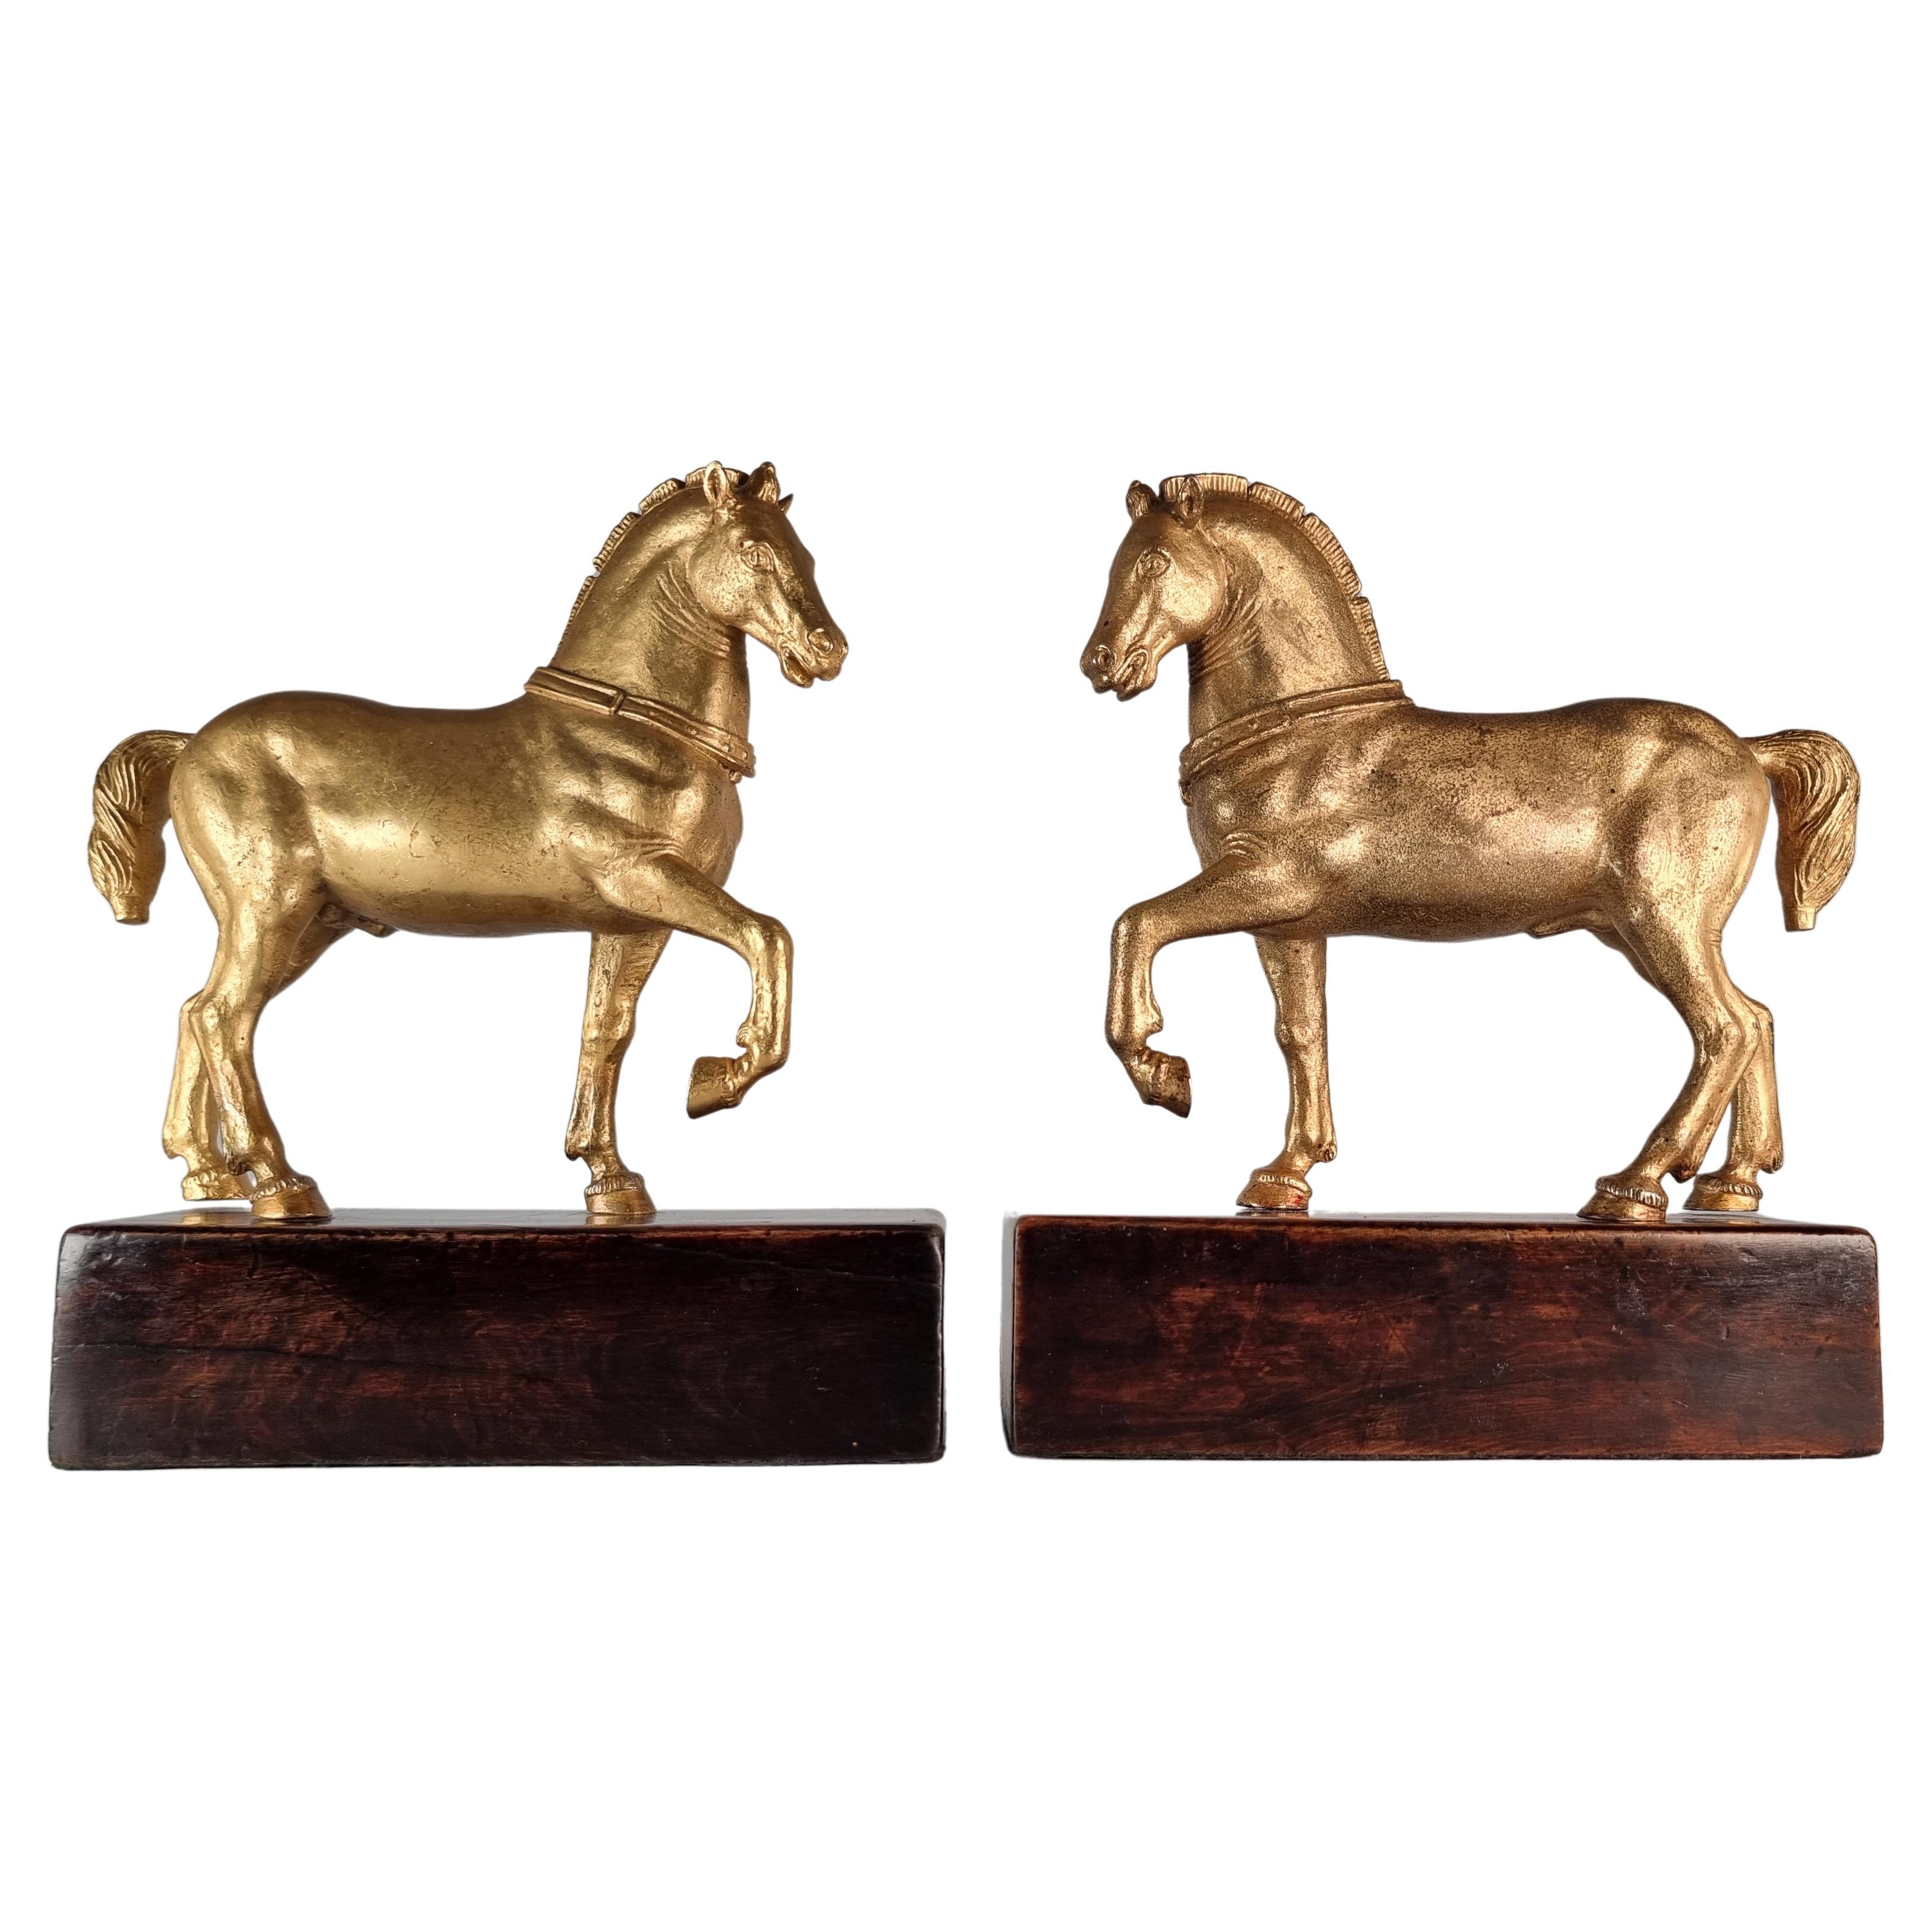 Rare paire de chevaux de Saint Marc de Venise en bronze doré du Grand Tour, vers 1900